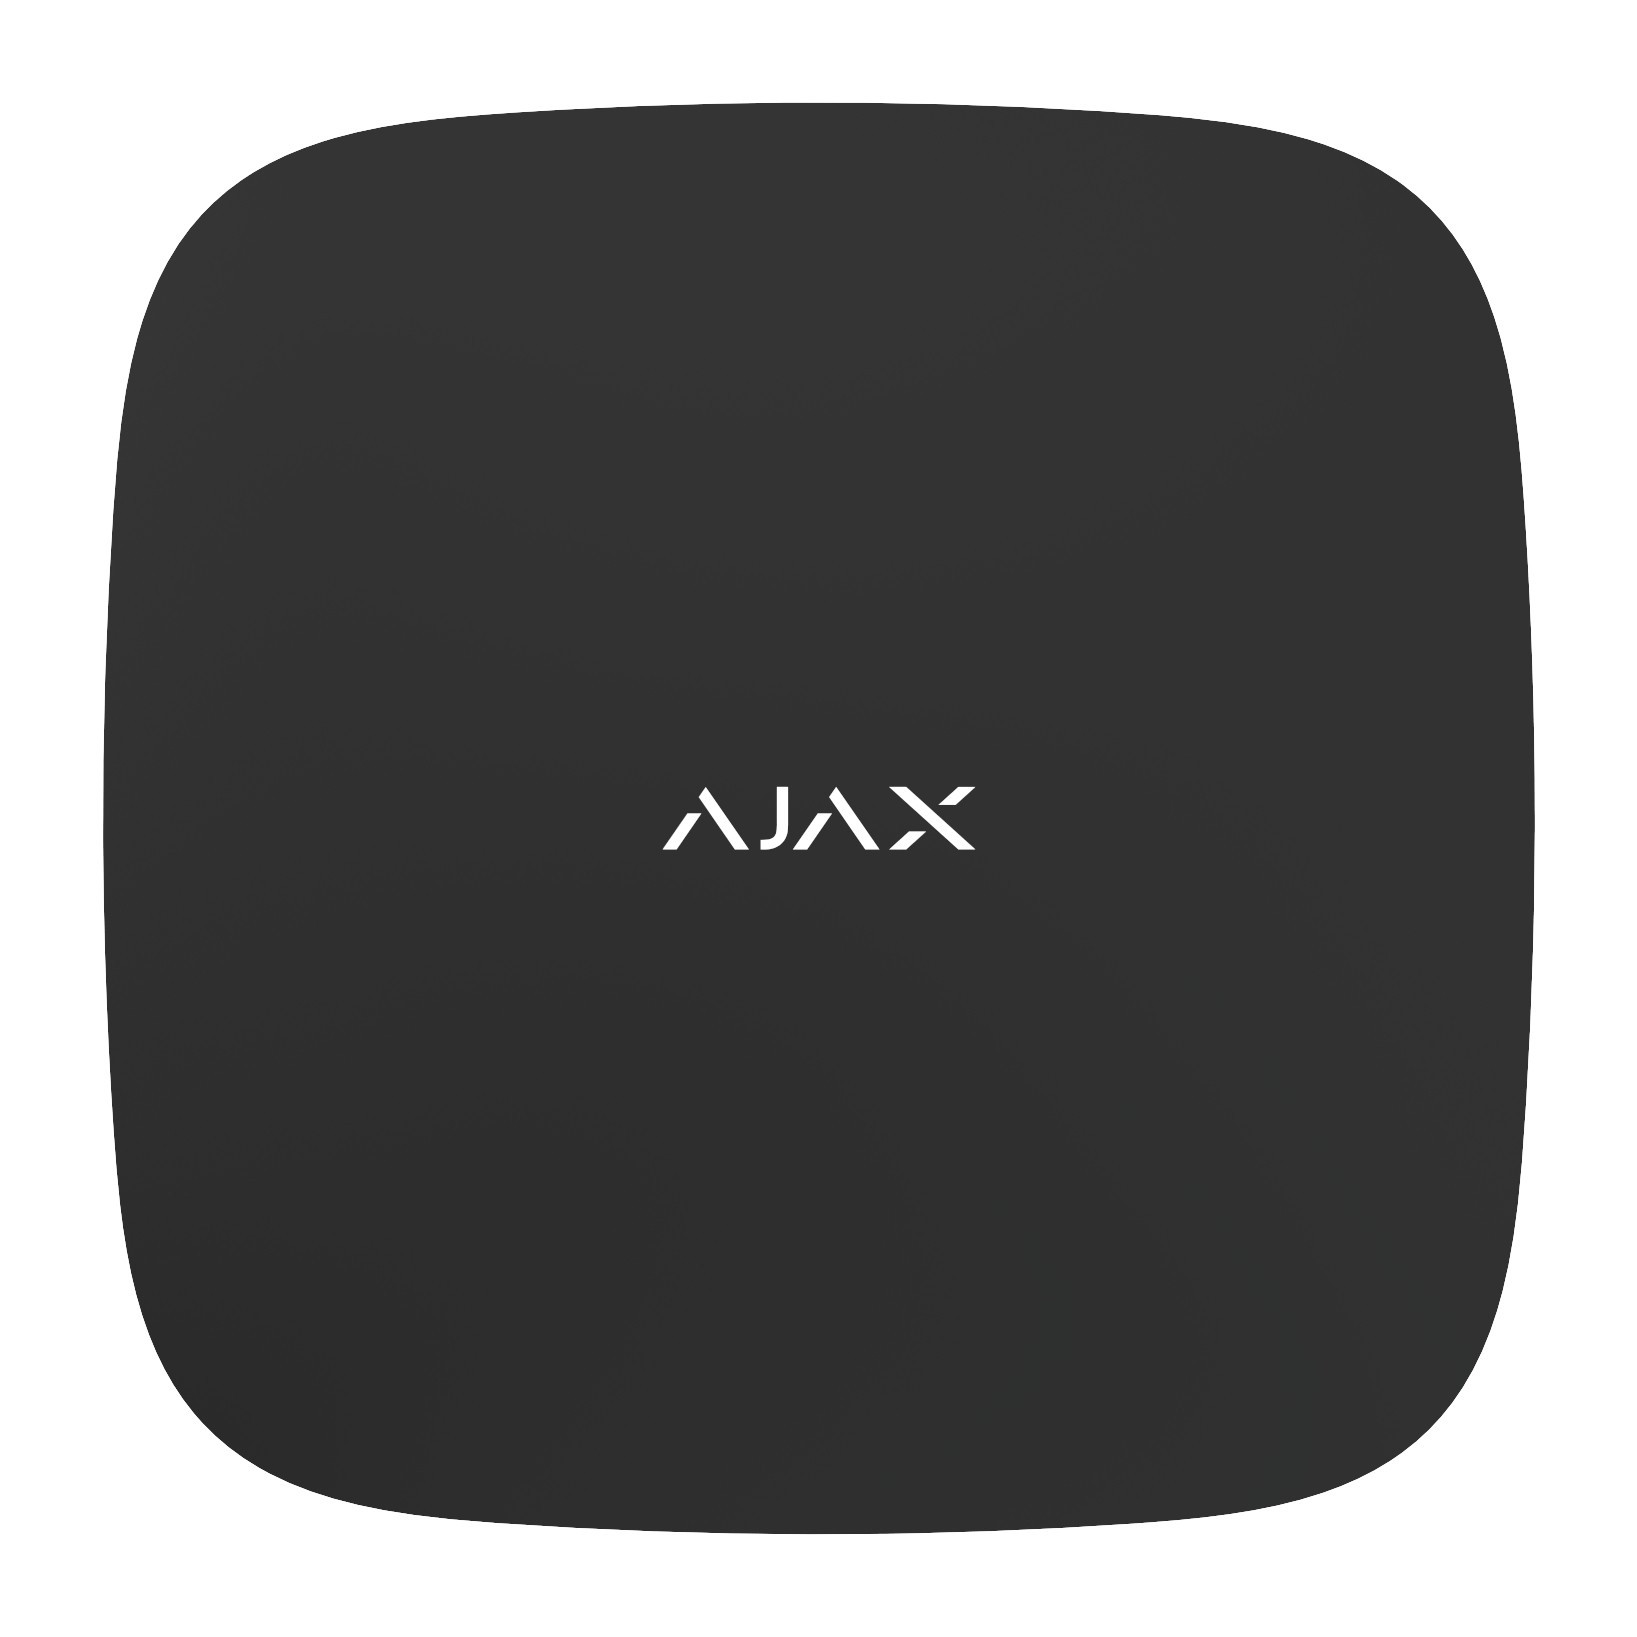 Центр управления Ajax Hub 2 Black (GSM2+Ethernet+MotionCam) Черный